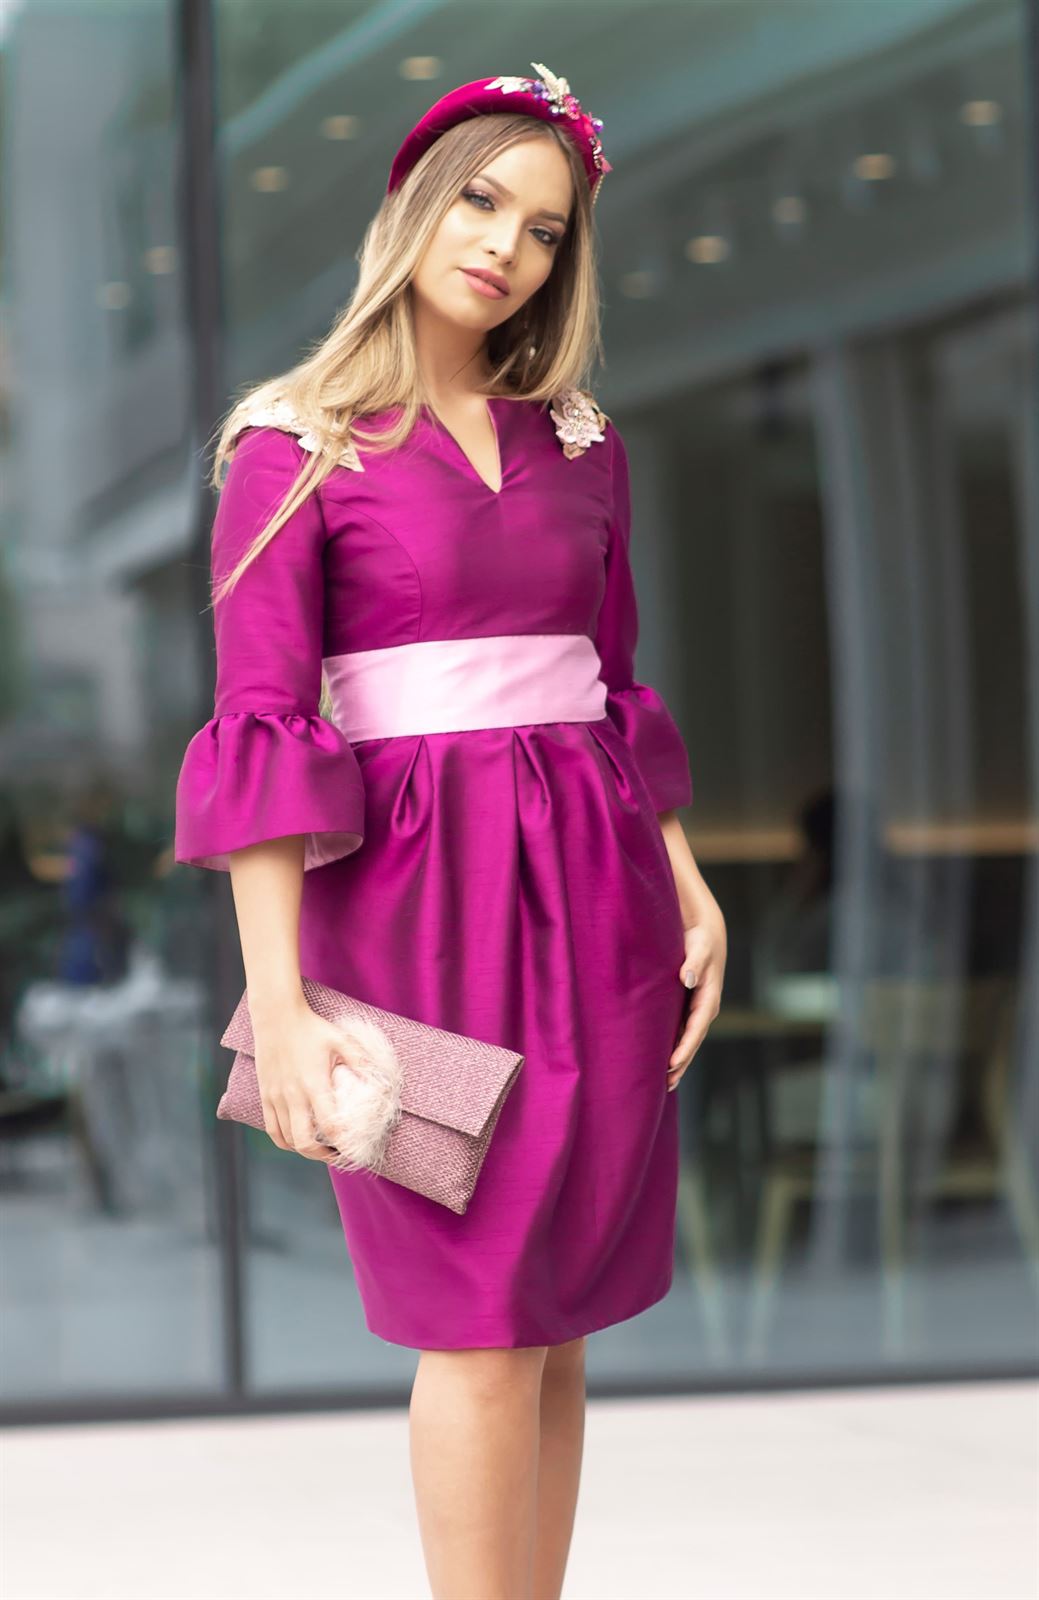 Vestido V-30 Shantung bicolor buganvilla y rosa empolvado, escote caja y manga cortita, falda corta abullonada - Imagen 2